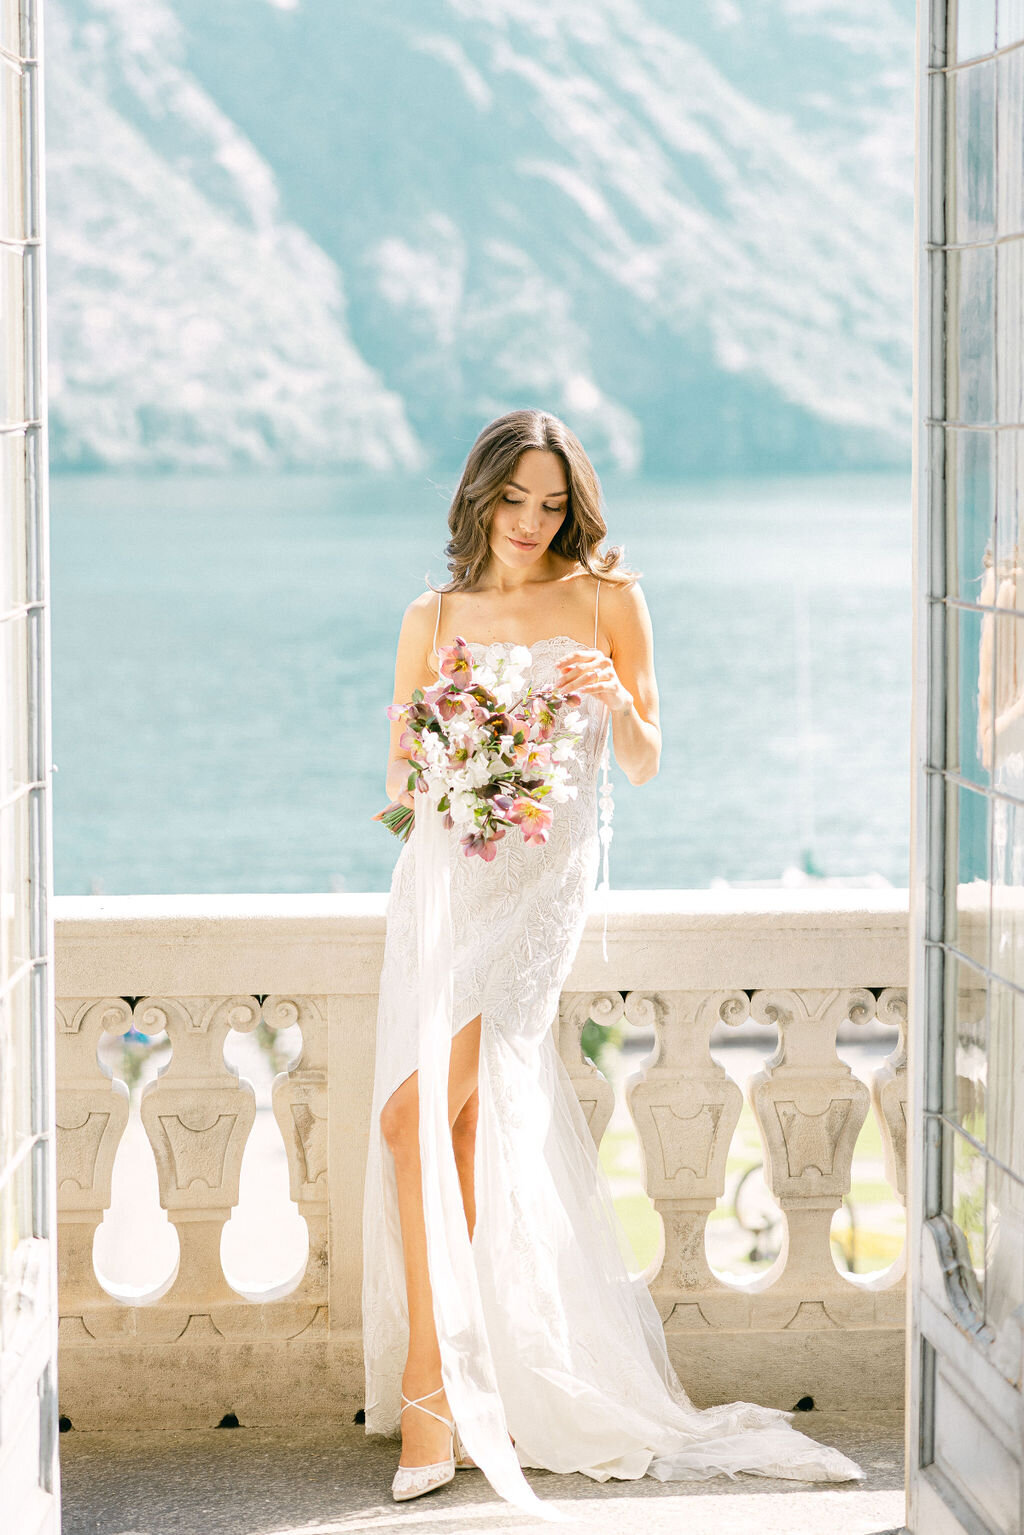 Lake Como Italy Wedding Photographer